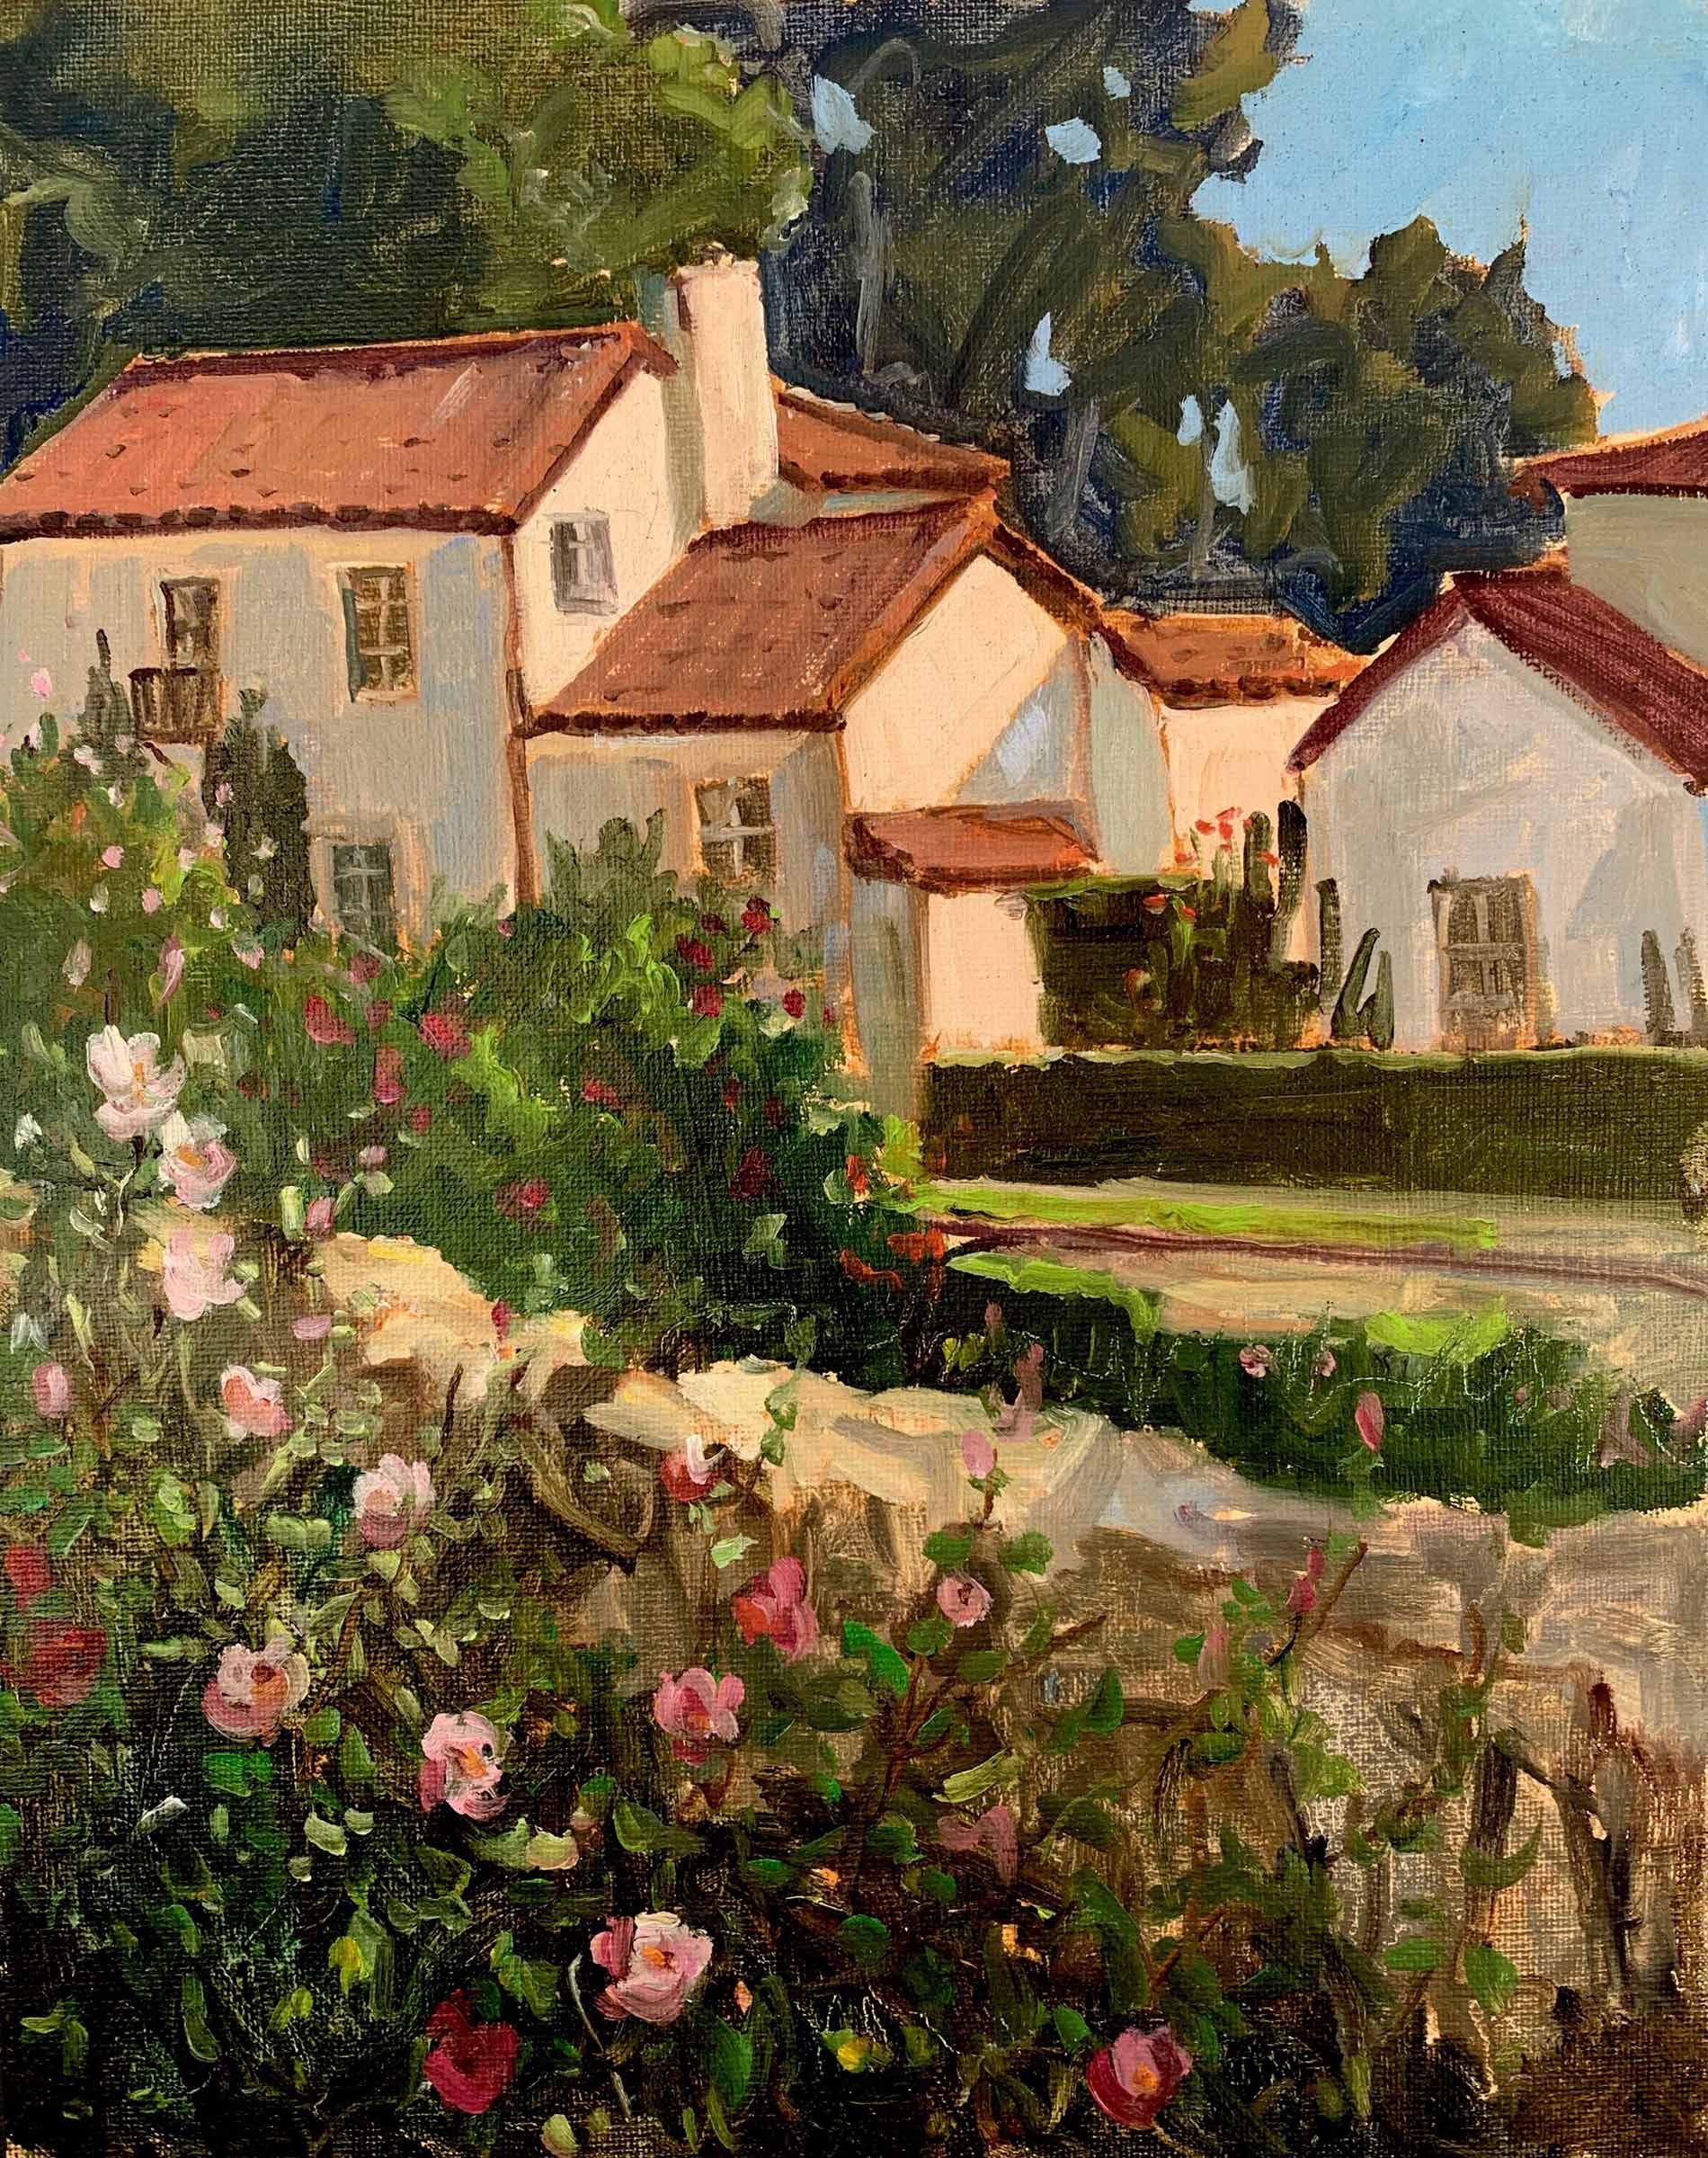 Rose Garden, Santa Barbara Mission